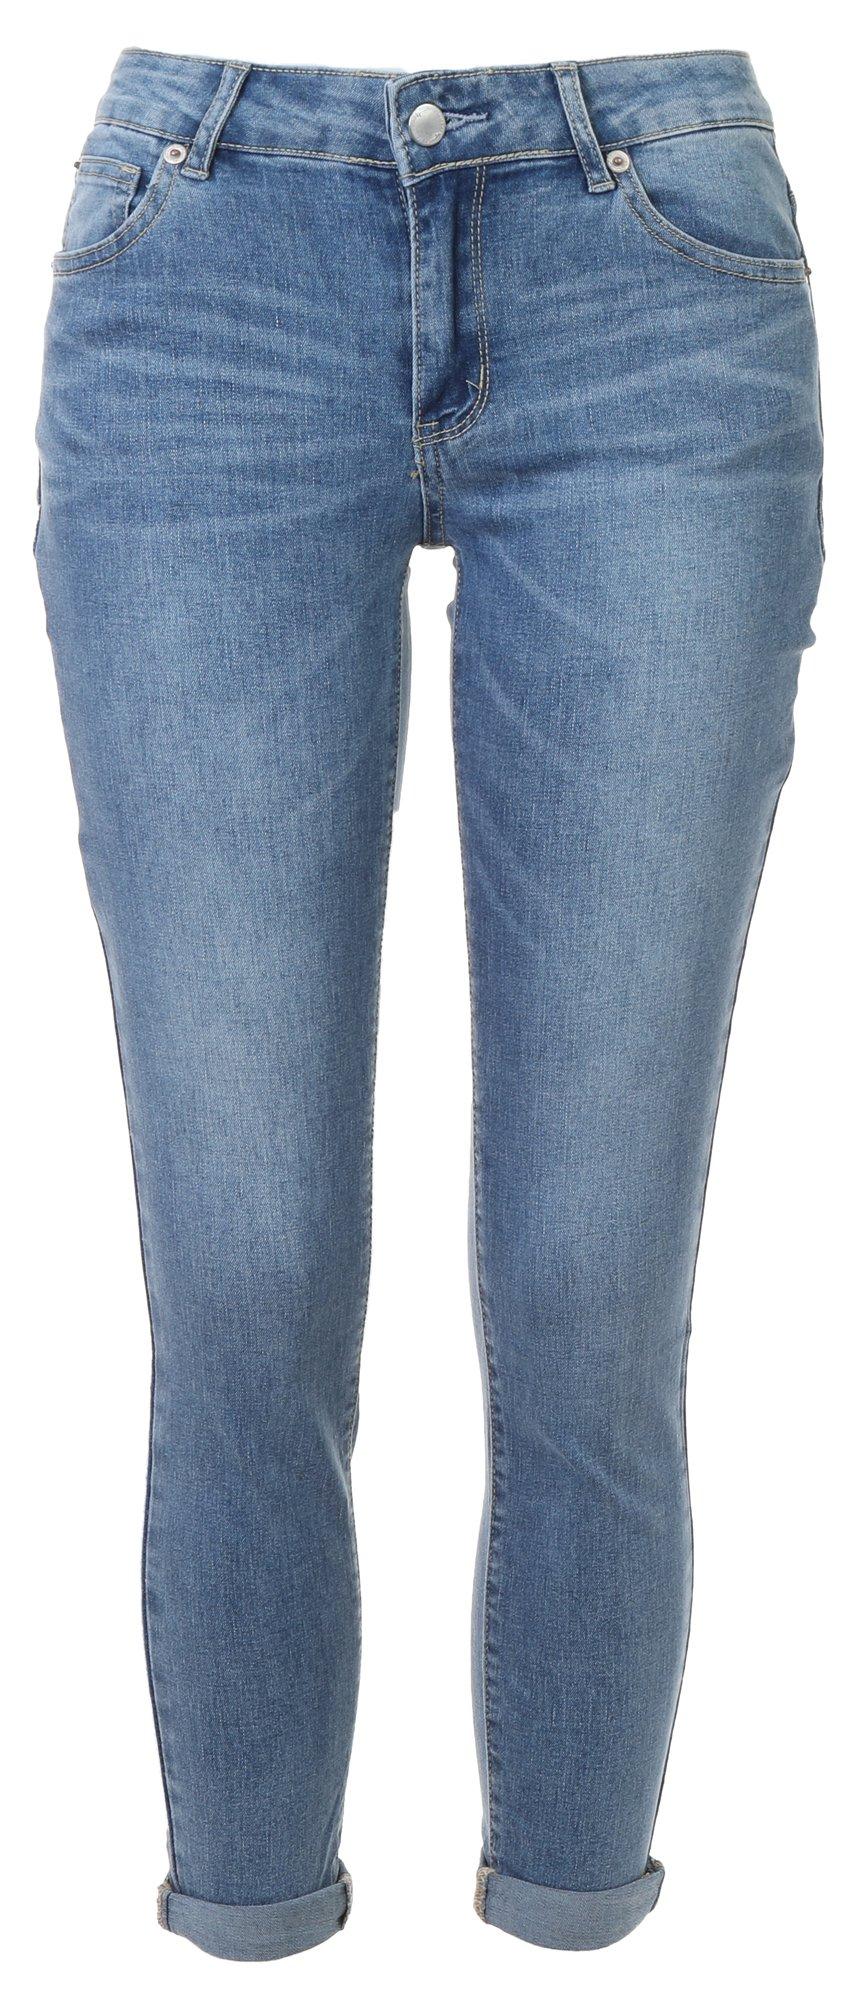 Gemma Rae Juniors Skinny Roll Cuff Jeans